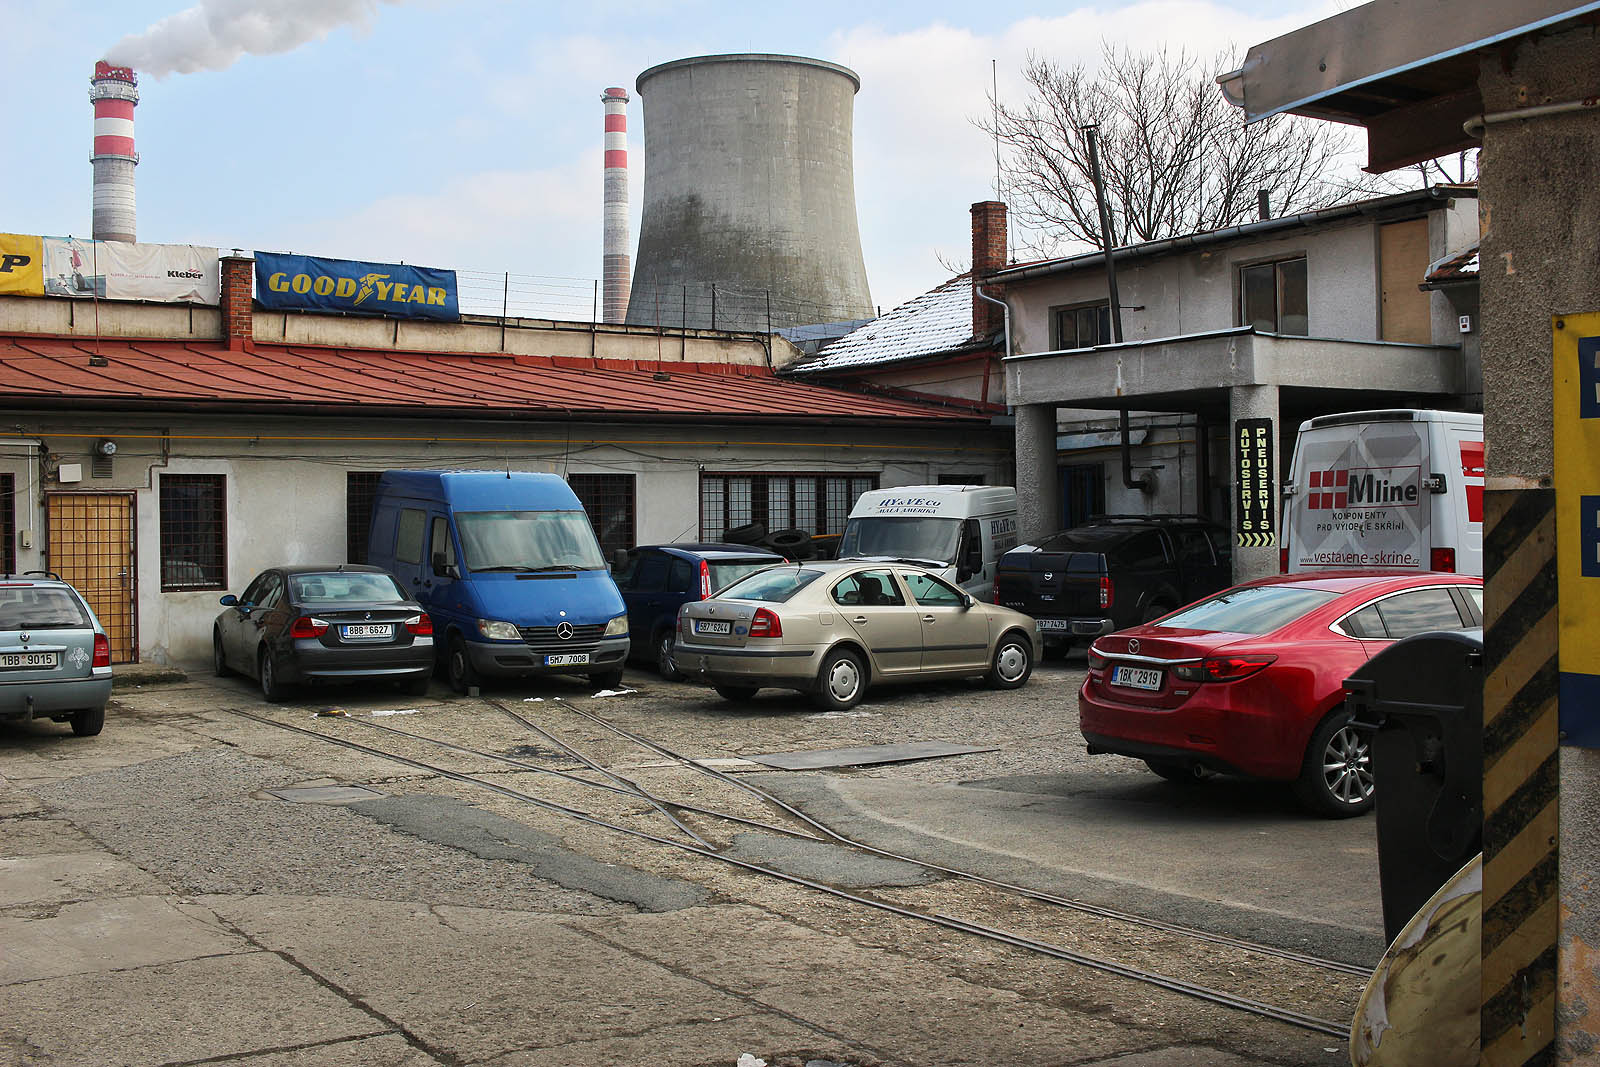 Úzkokolejka na Vlhké ulici je pozůstatkem po působení Stavebního podniku města Brna (SPMB).